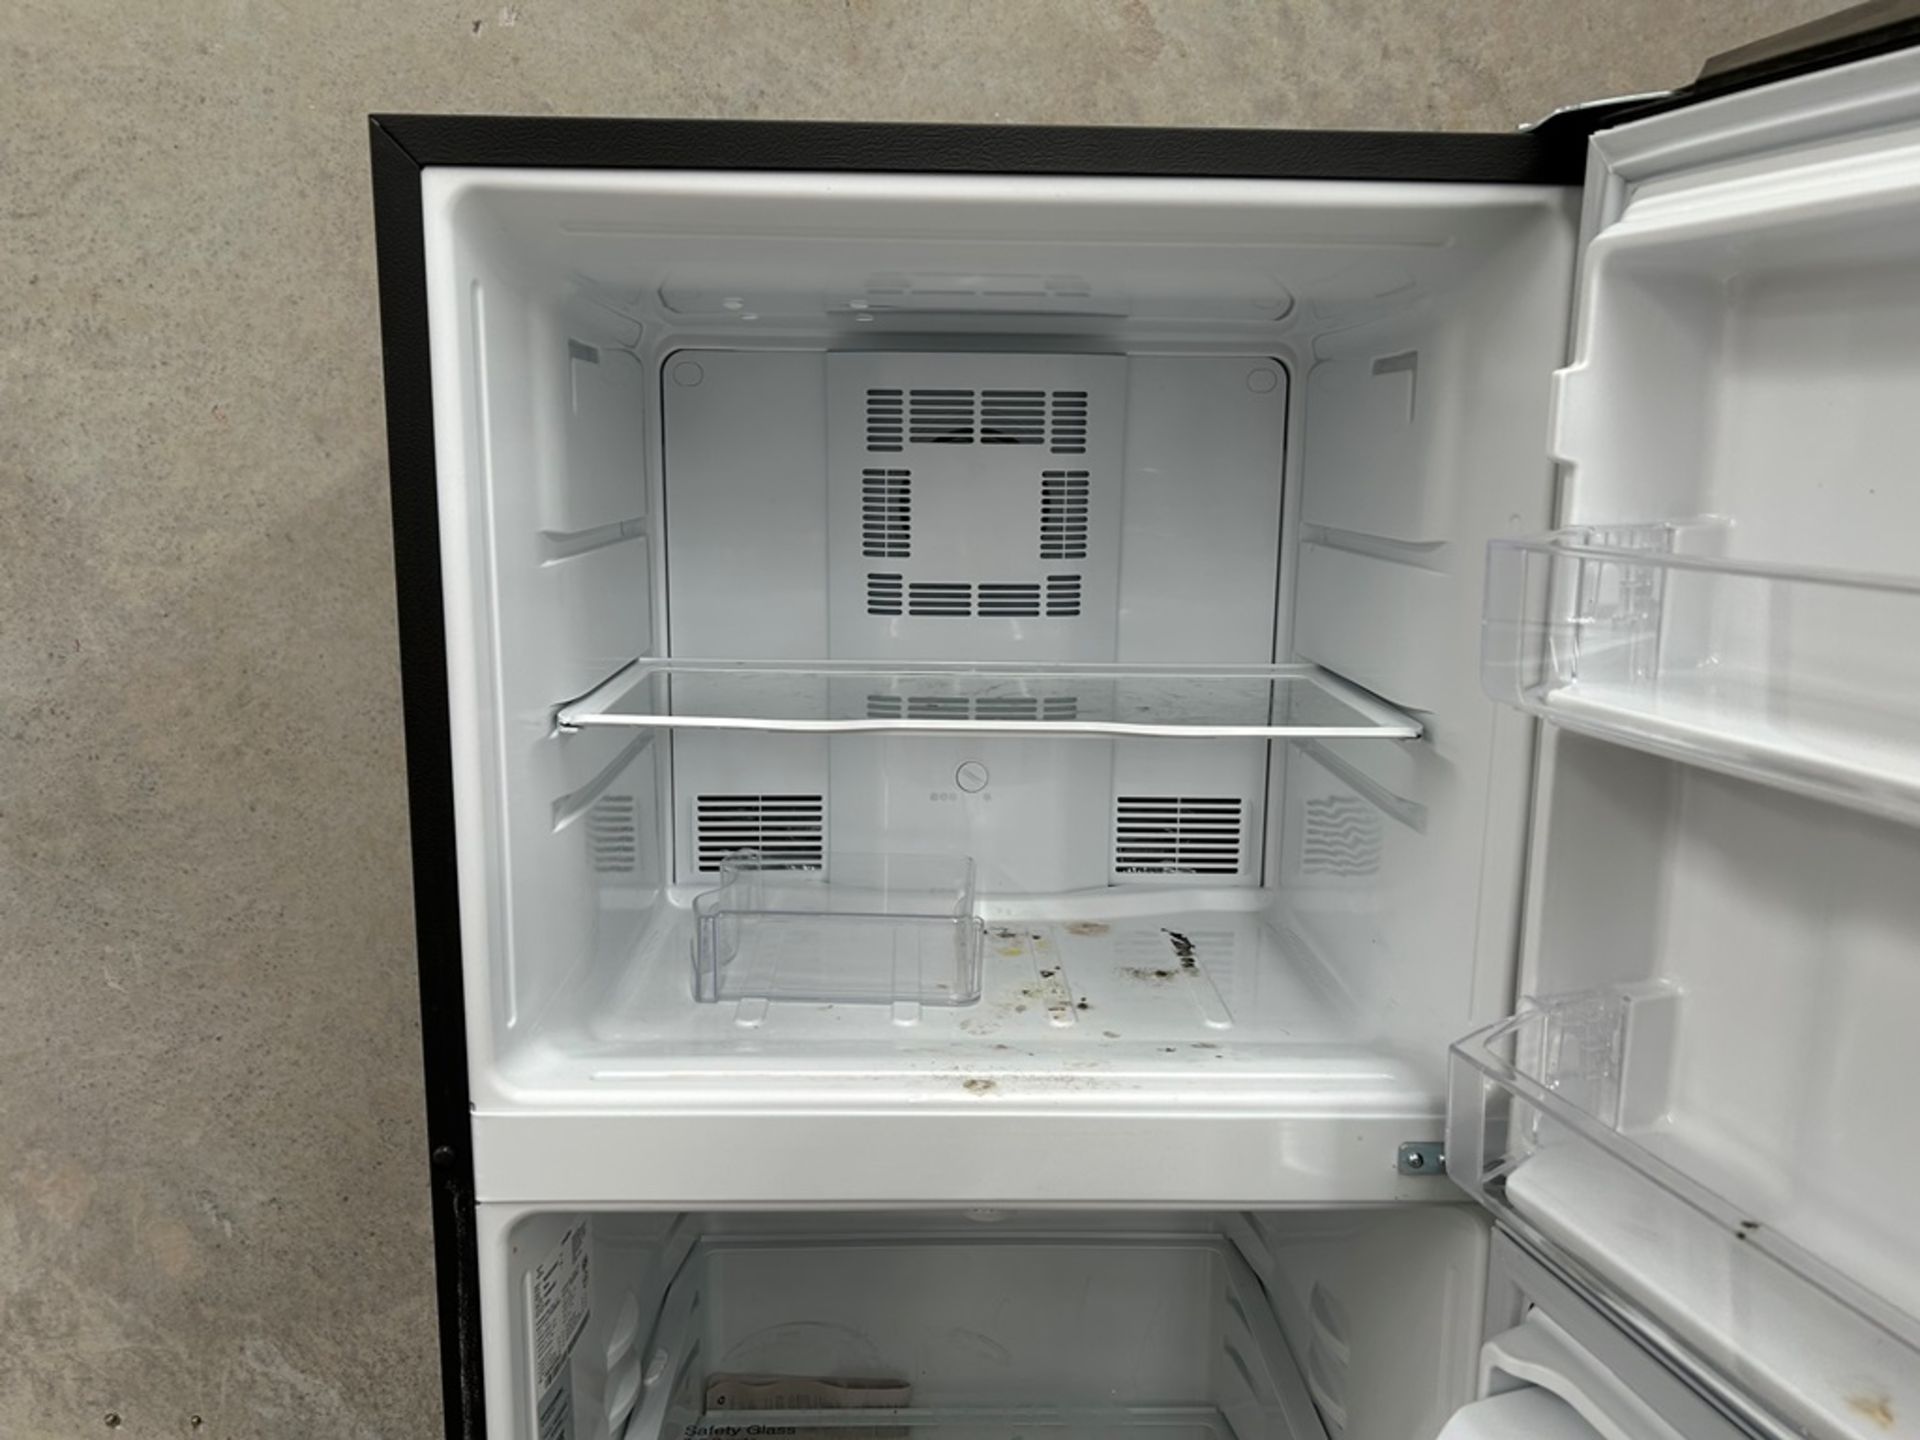 Lote de 2 refrigeradores contiene: 1 Refrigerador con dispensador de agua Marca MABE, Modelo RME360 - Image 5 of 18